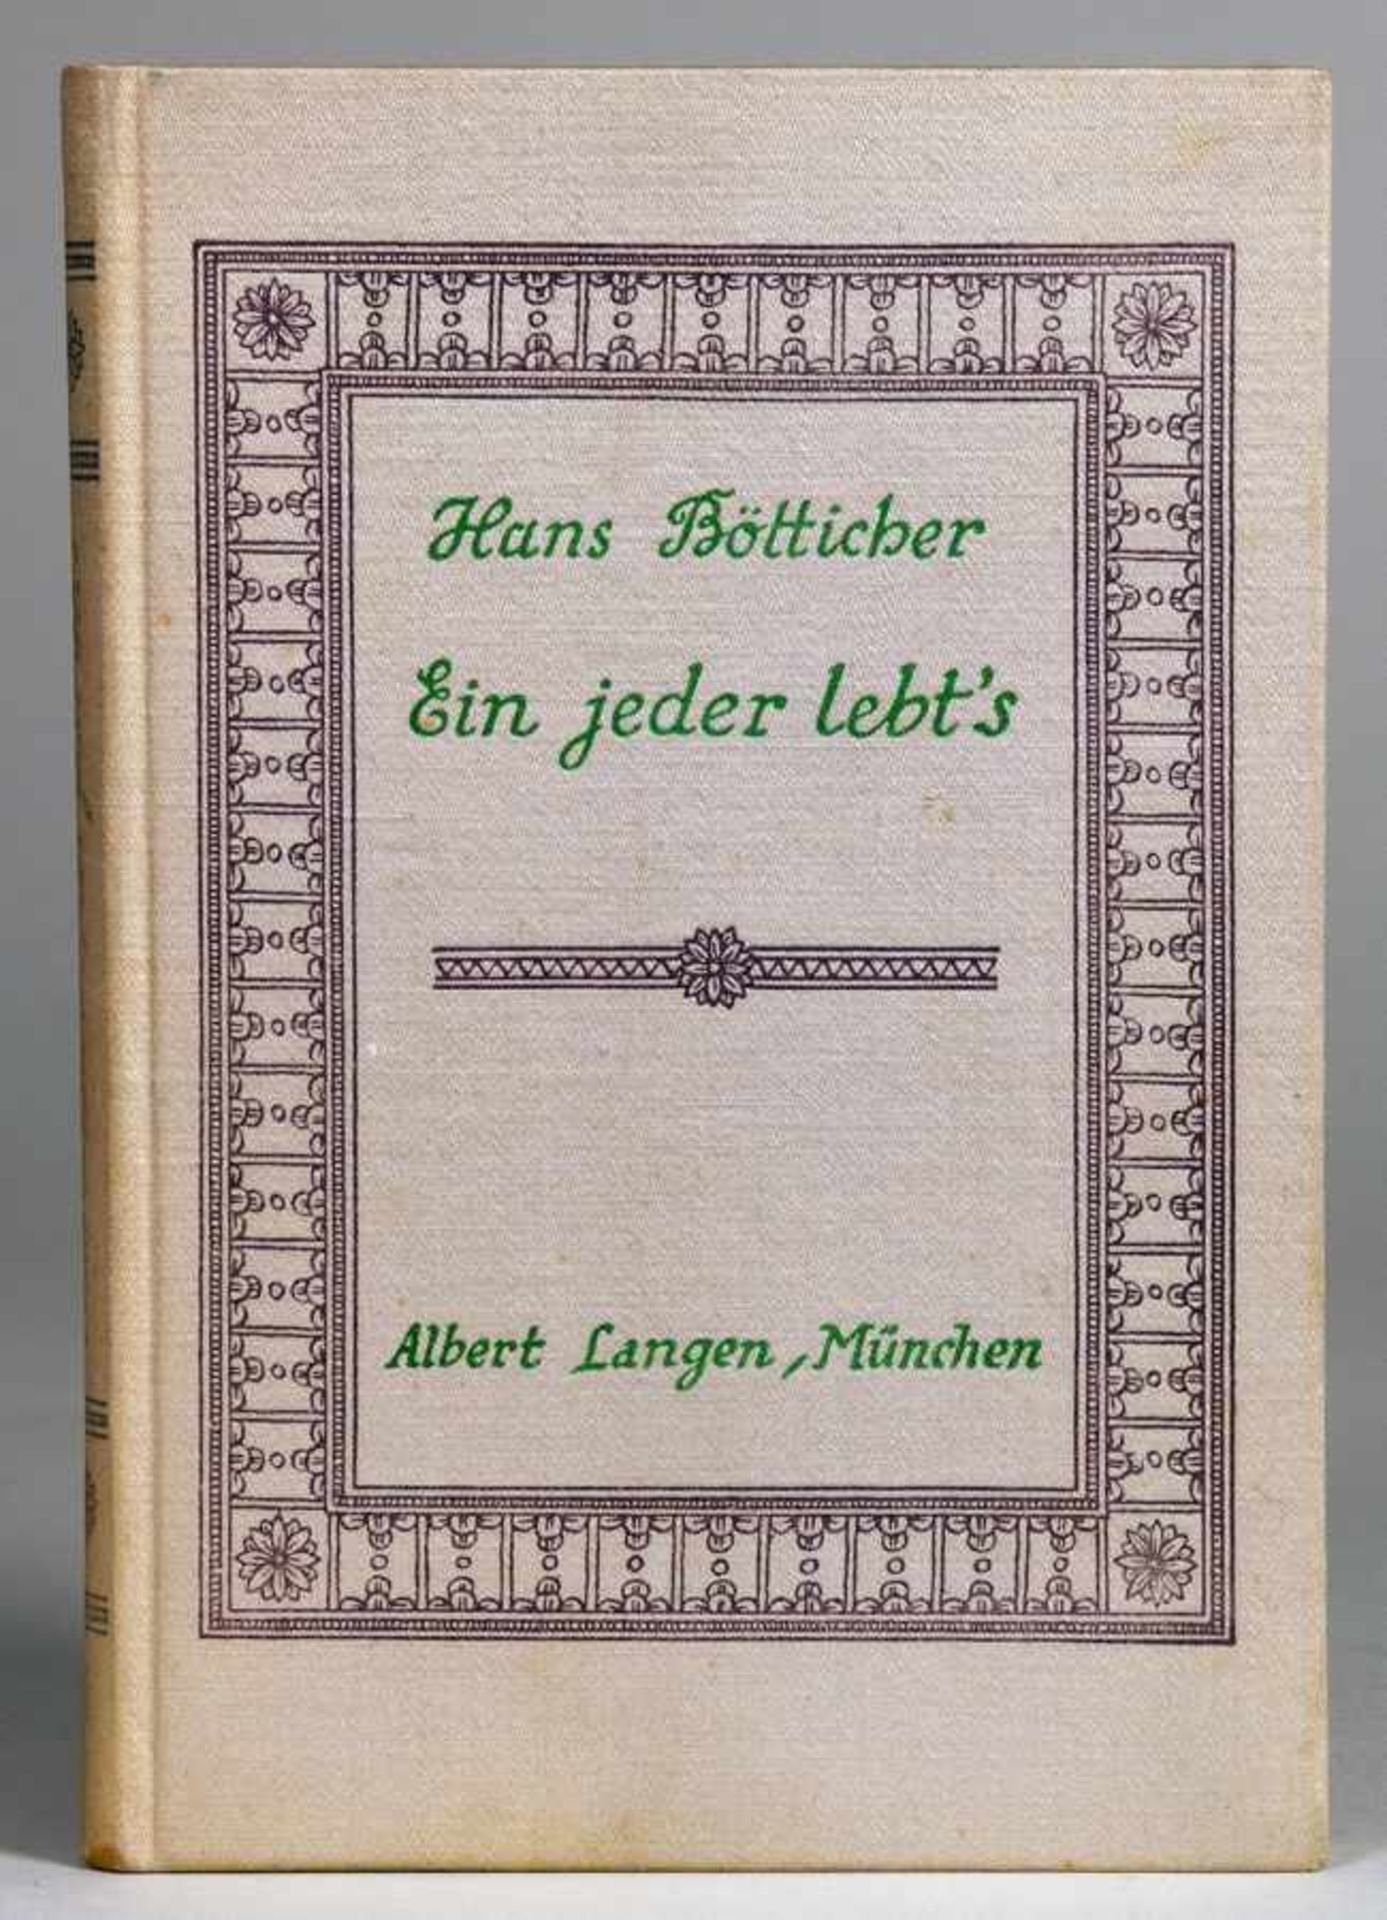 [Joachim Ringelnatz] Hans Bötticher. Ein jeder lebts. Novellen. München, Albert Langen 1913.